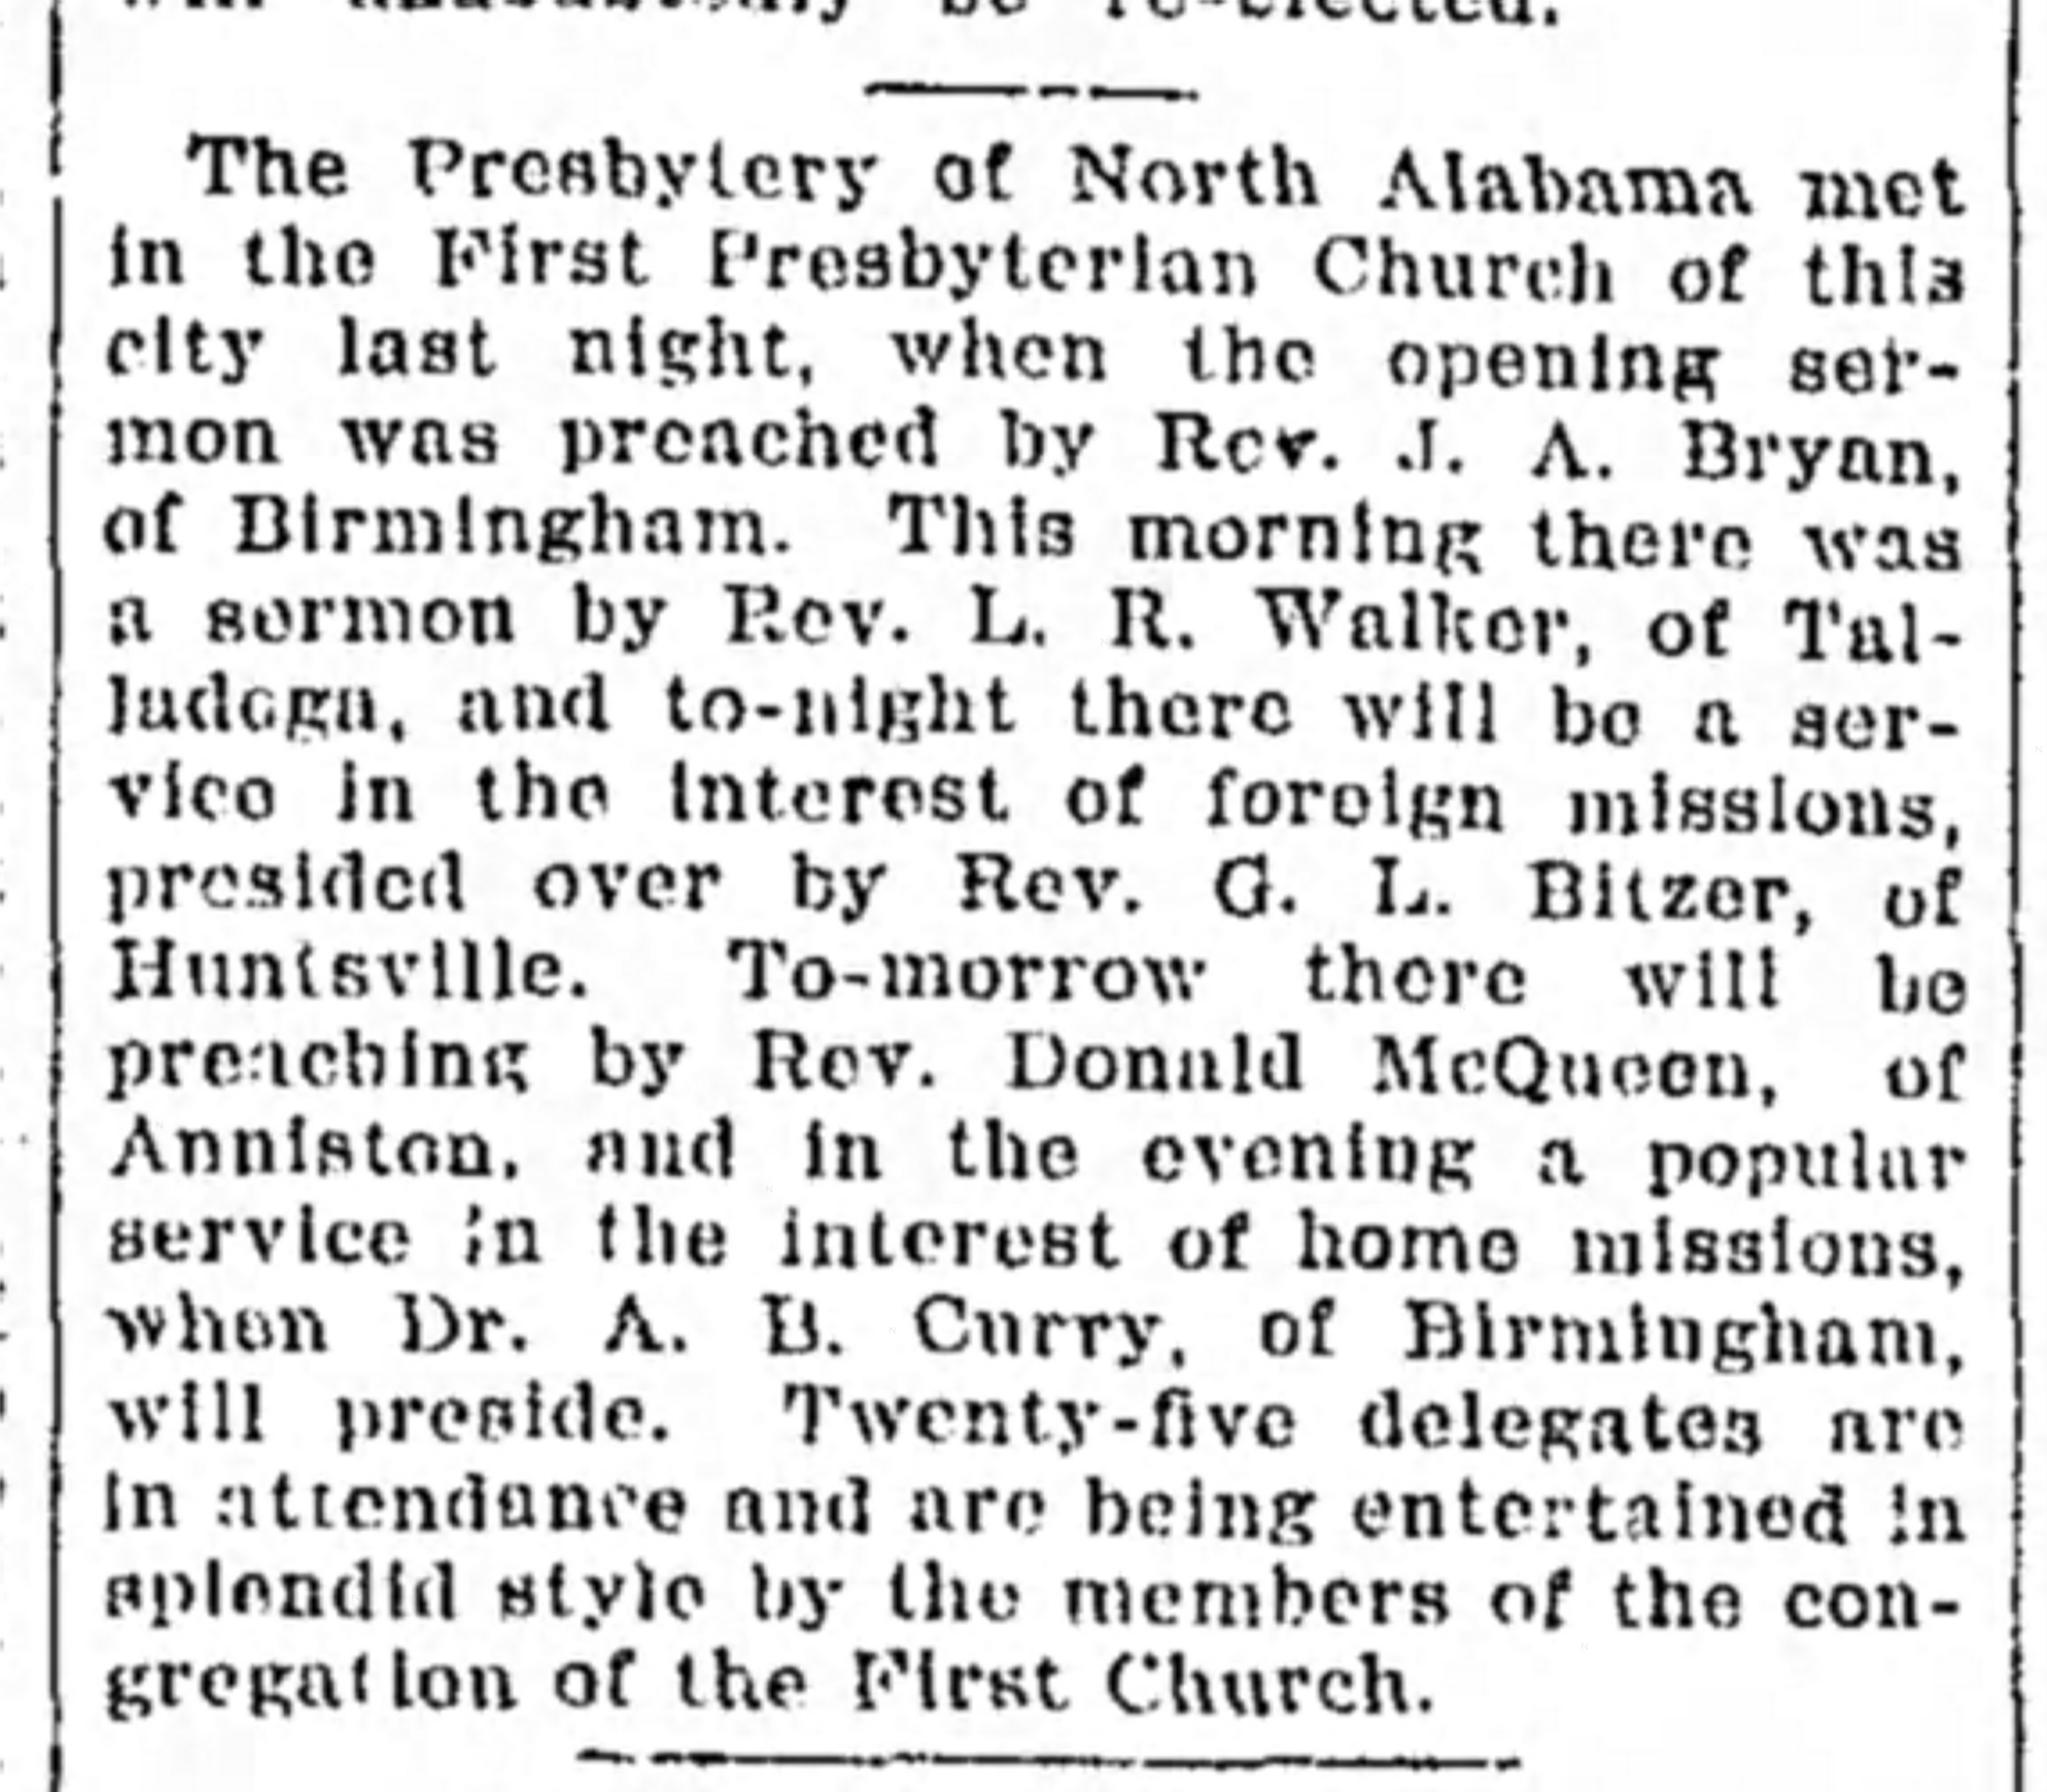 Meeting of the Presbytery of Northern Alabama